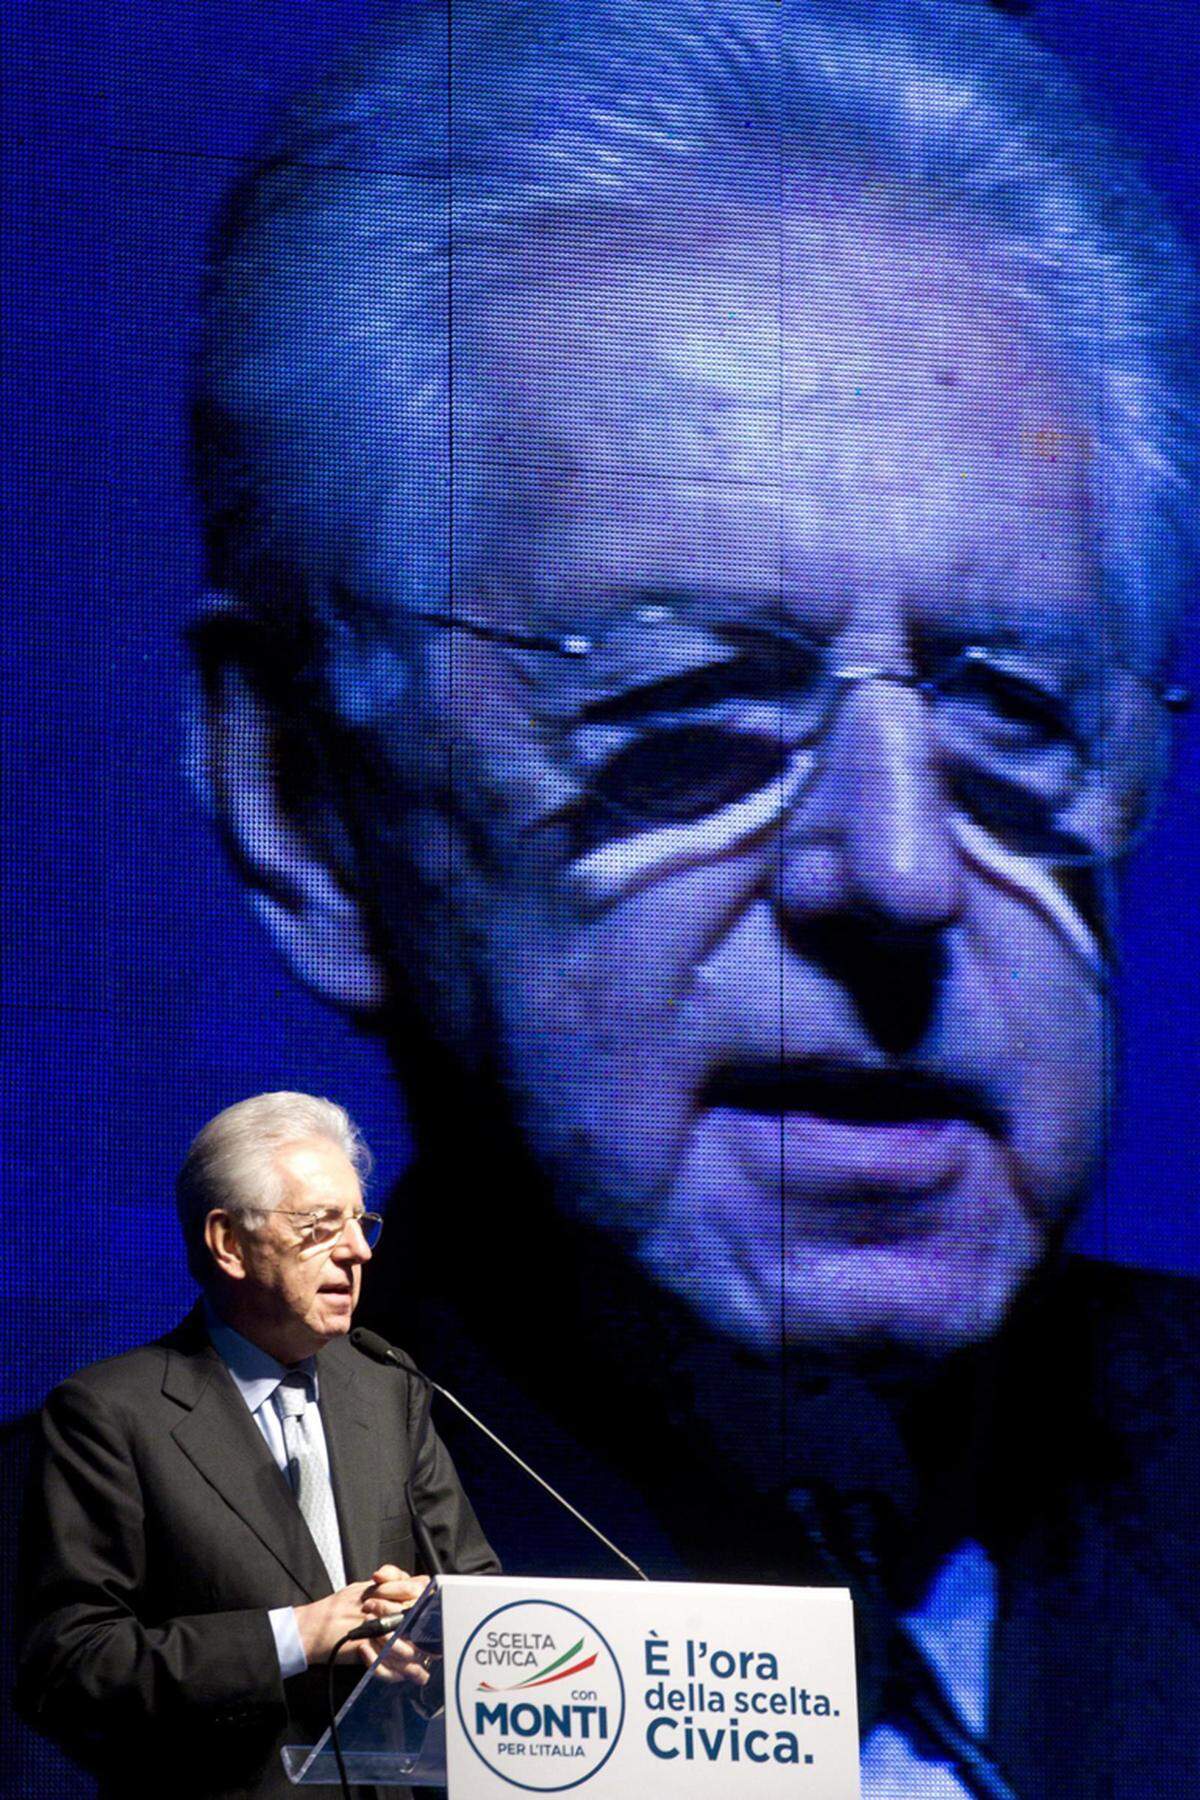 Dem Zentrumsblock werden 14 Prozent vorhergesagt. Wirtschaftsprofessor Monti führt seinen Wahlkampf vor allem mit Warnungen vor einer Rückkehr Berlusconis: Der Milliardär habe Italien an den Rand des finanziellen Abgrunds geführt. Er habe dagegen das Land mit seiner Regierung vor dem Absturz bewahrt und ihm wieder Respekt in der Welt verschafft, so Monti.